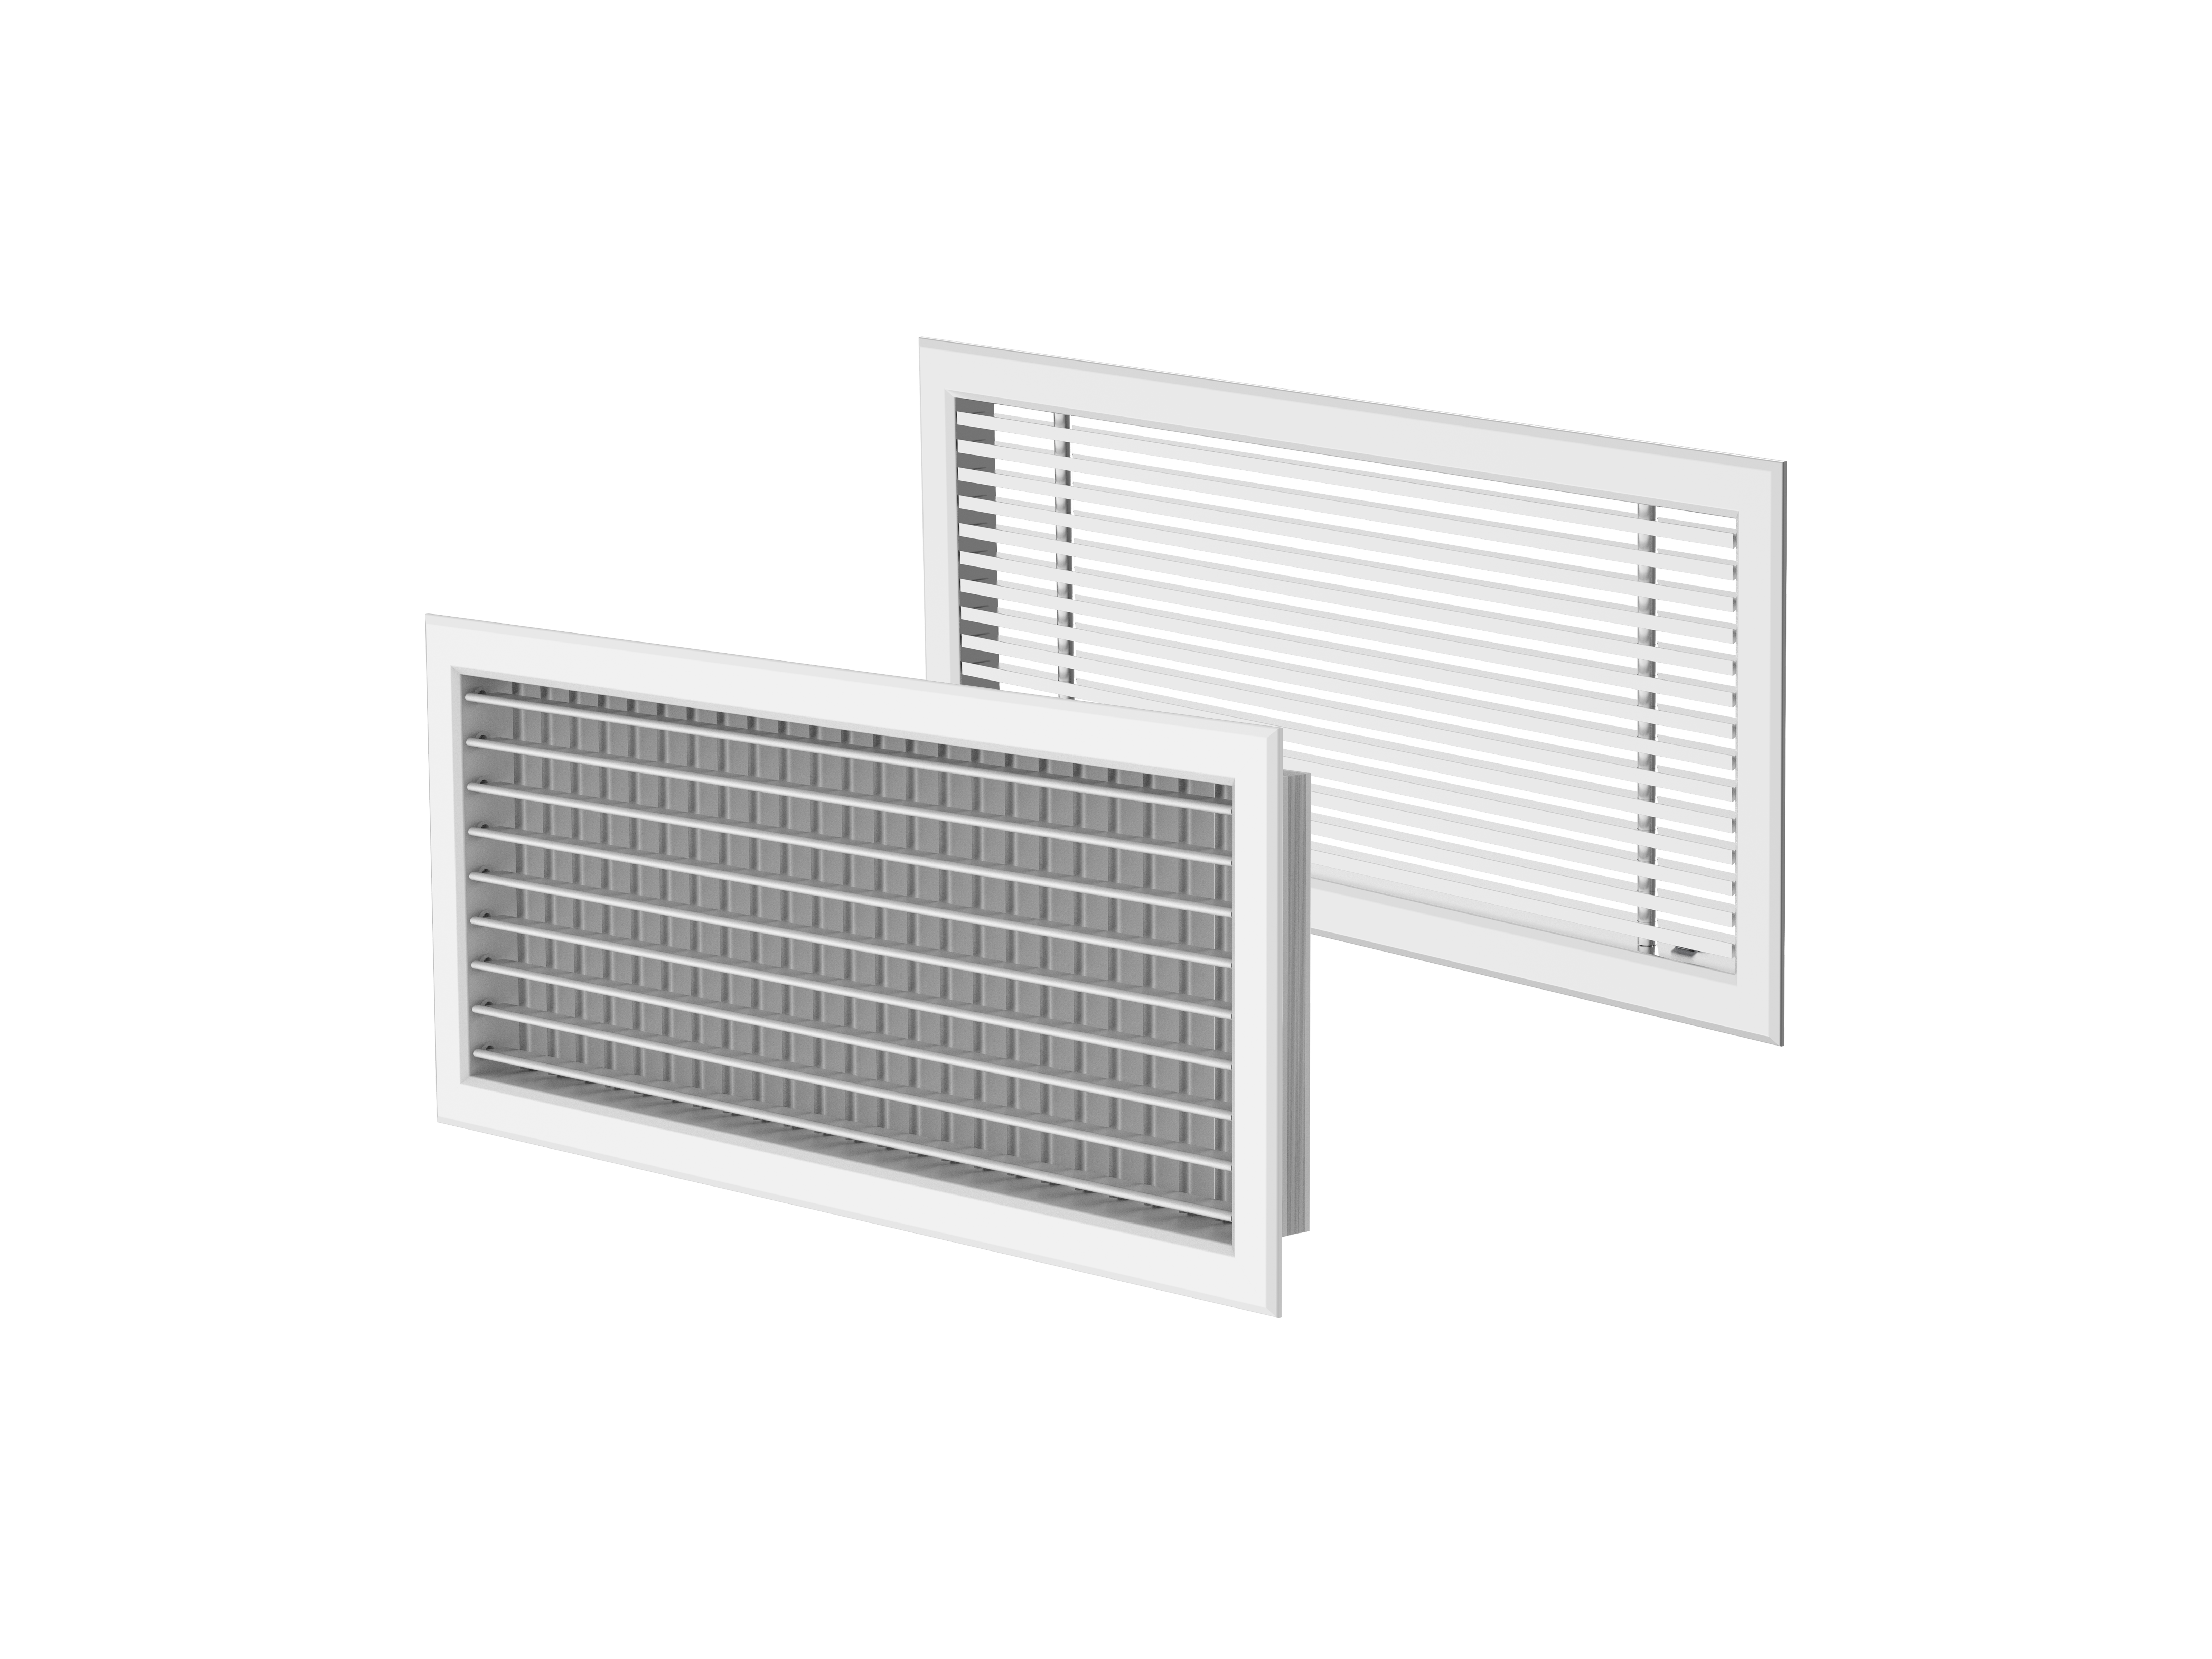 NOVA - Grilles - Grilles et Diffuseurs (Ventilation et Traitement d’air) - Produits Ventilation & Traitement d’air - Systemair